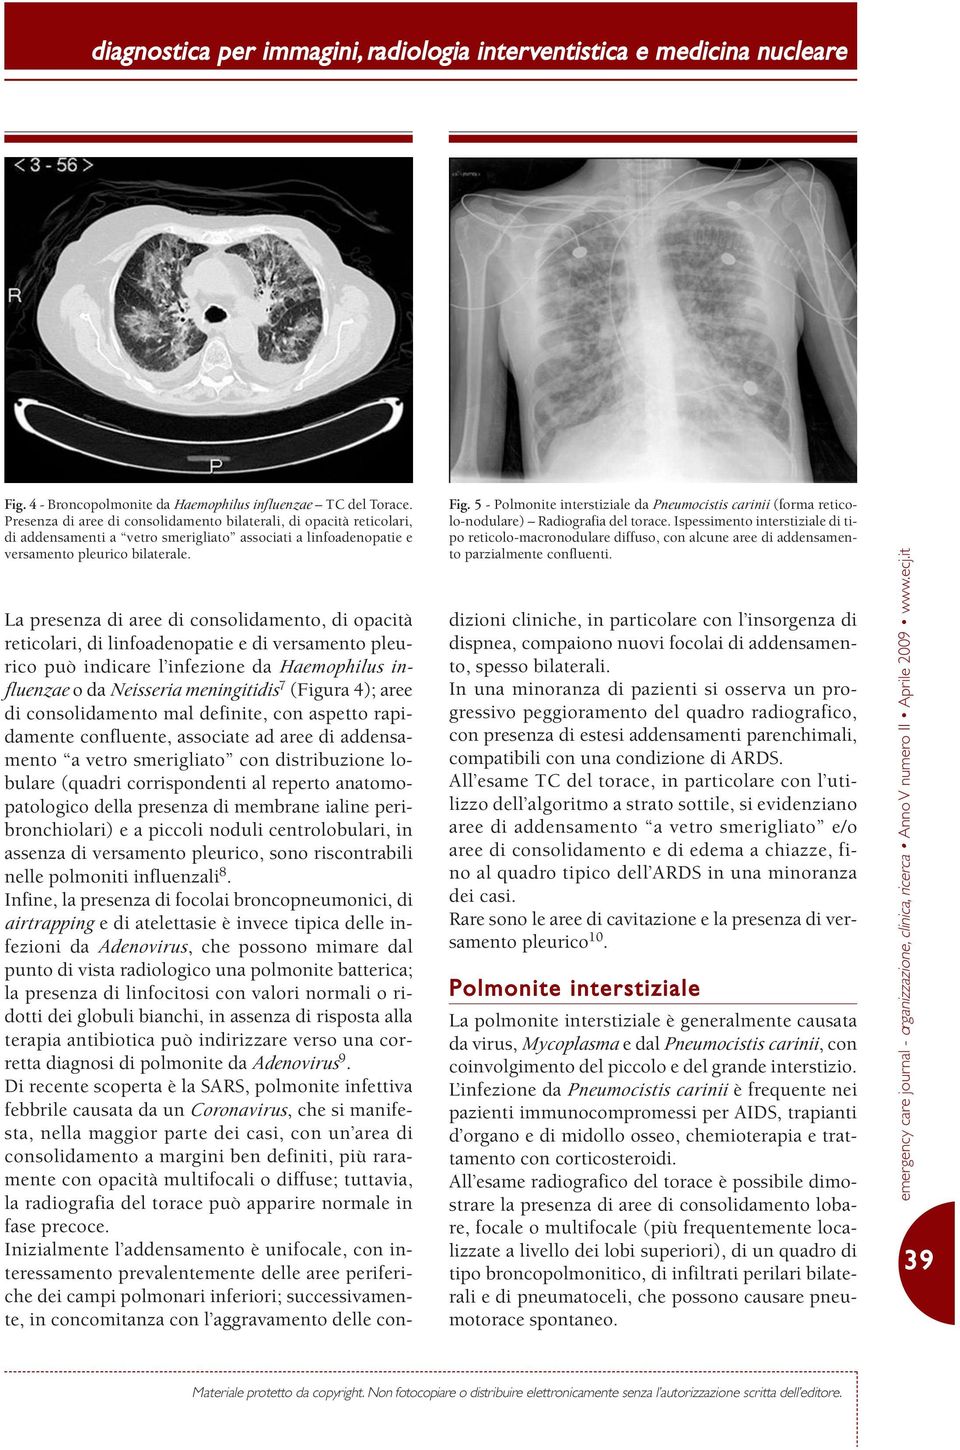 5 - Polmonite interstiziale da Pneumocistis carinii (forma reticolo-nodulare) Radiografia del torace.